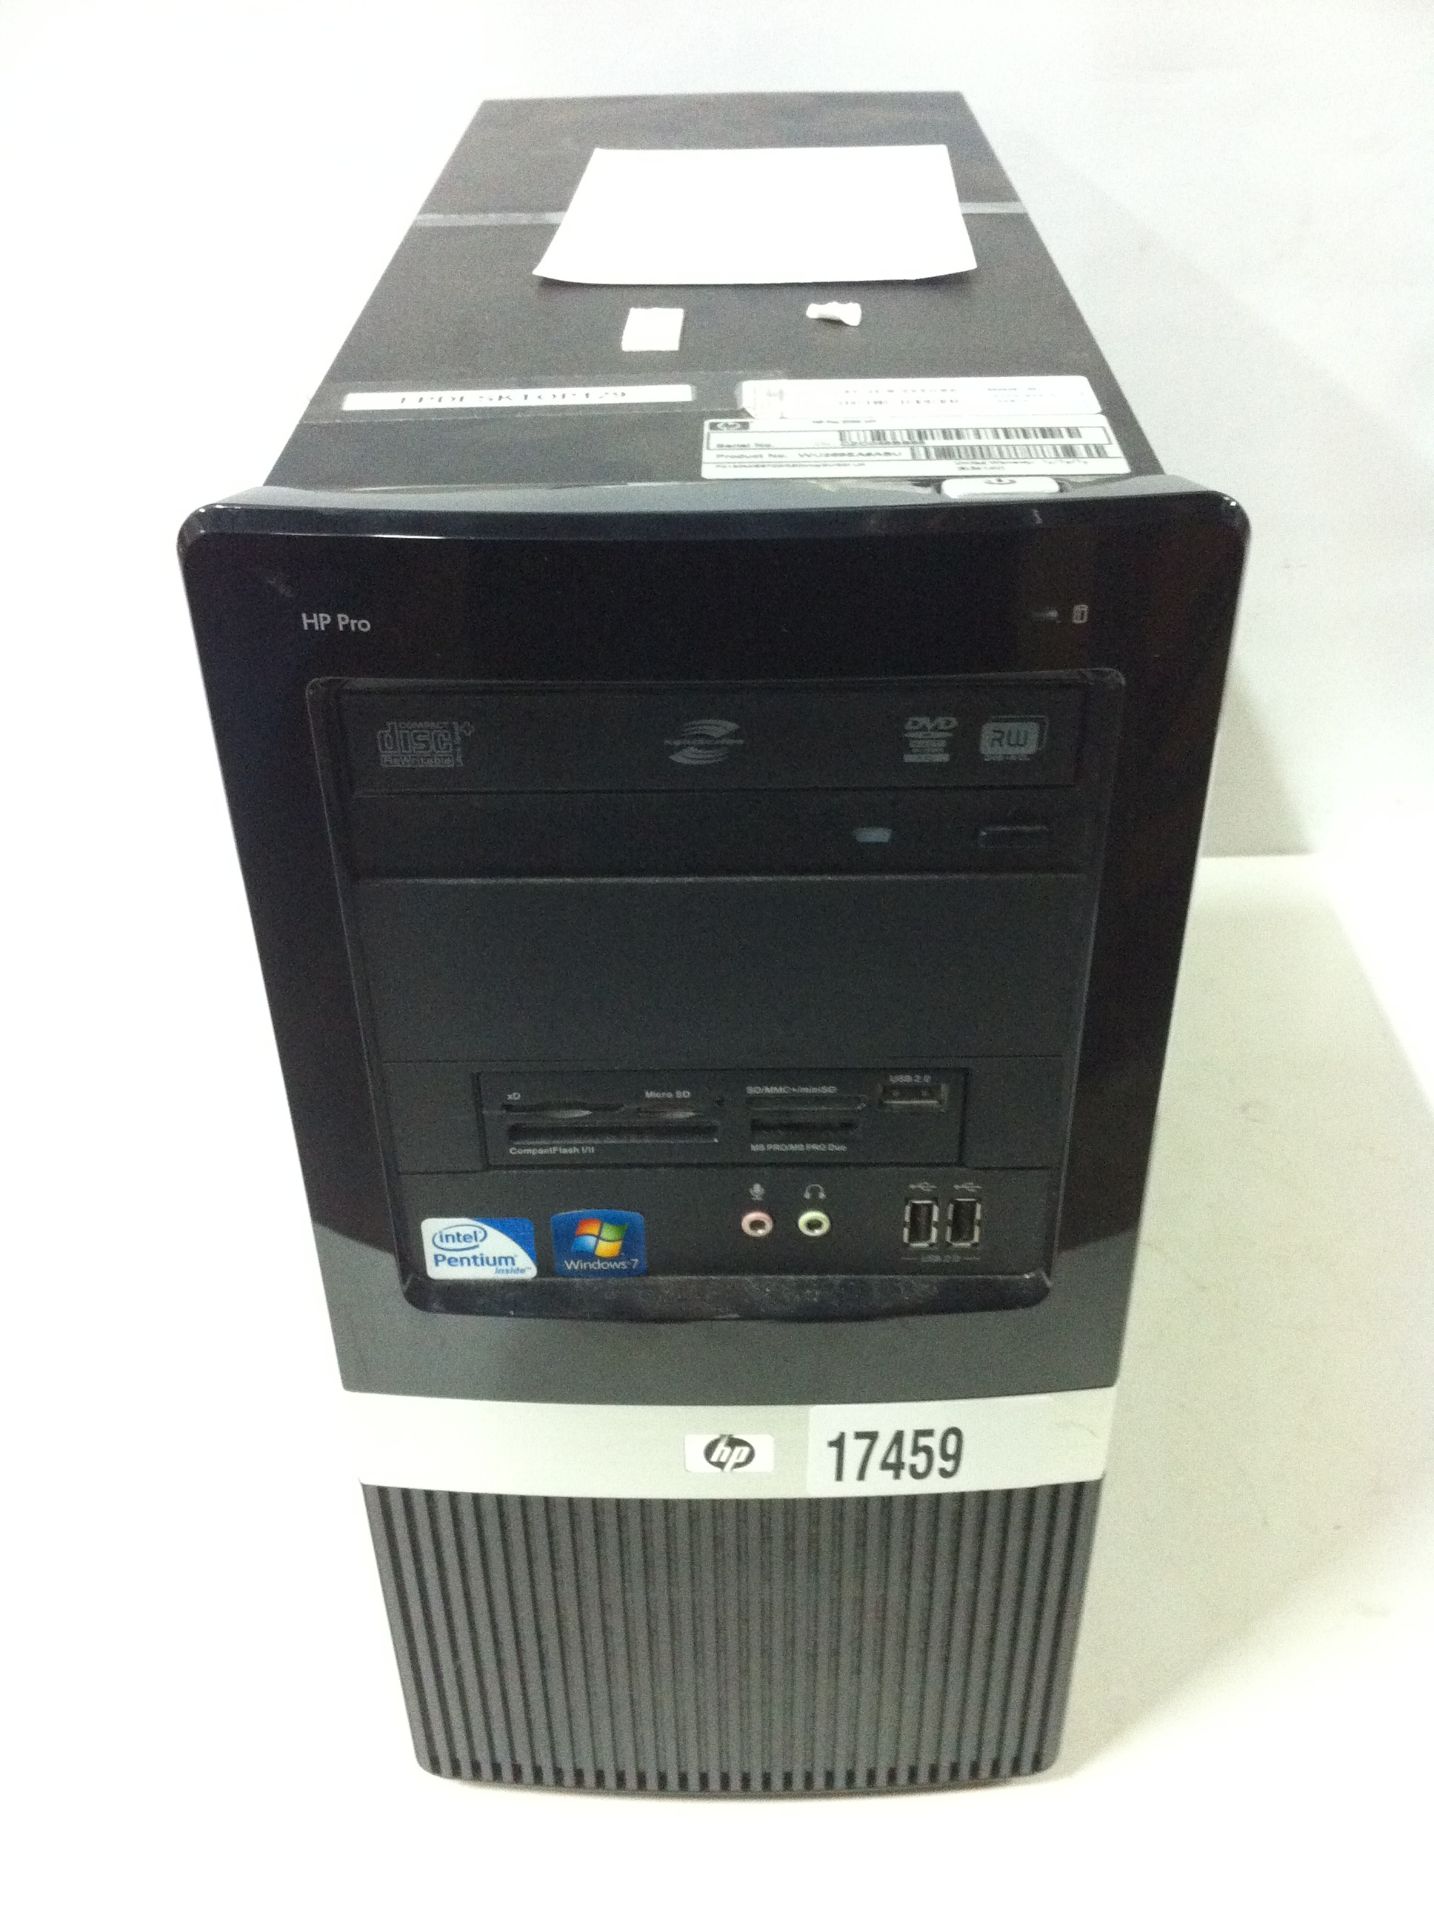 5x HP Desktop PC's - See Description - Image 2 of 6